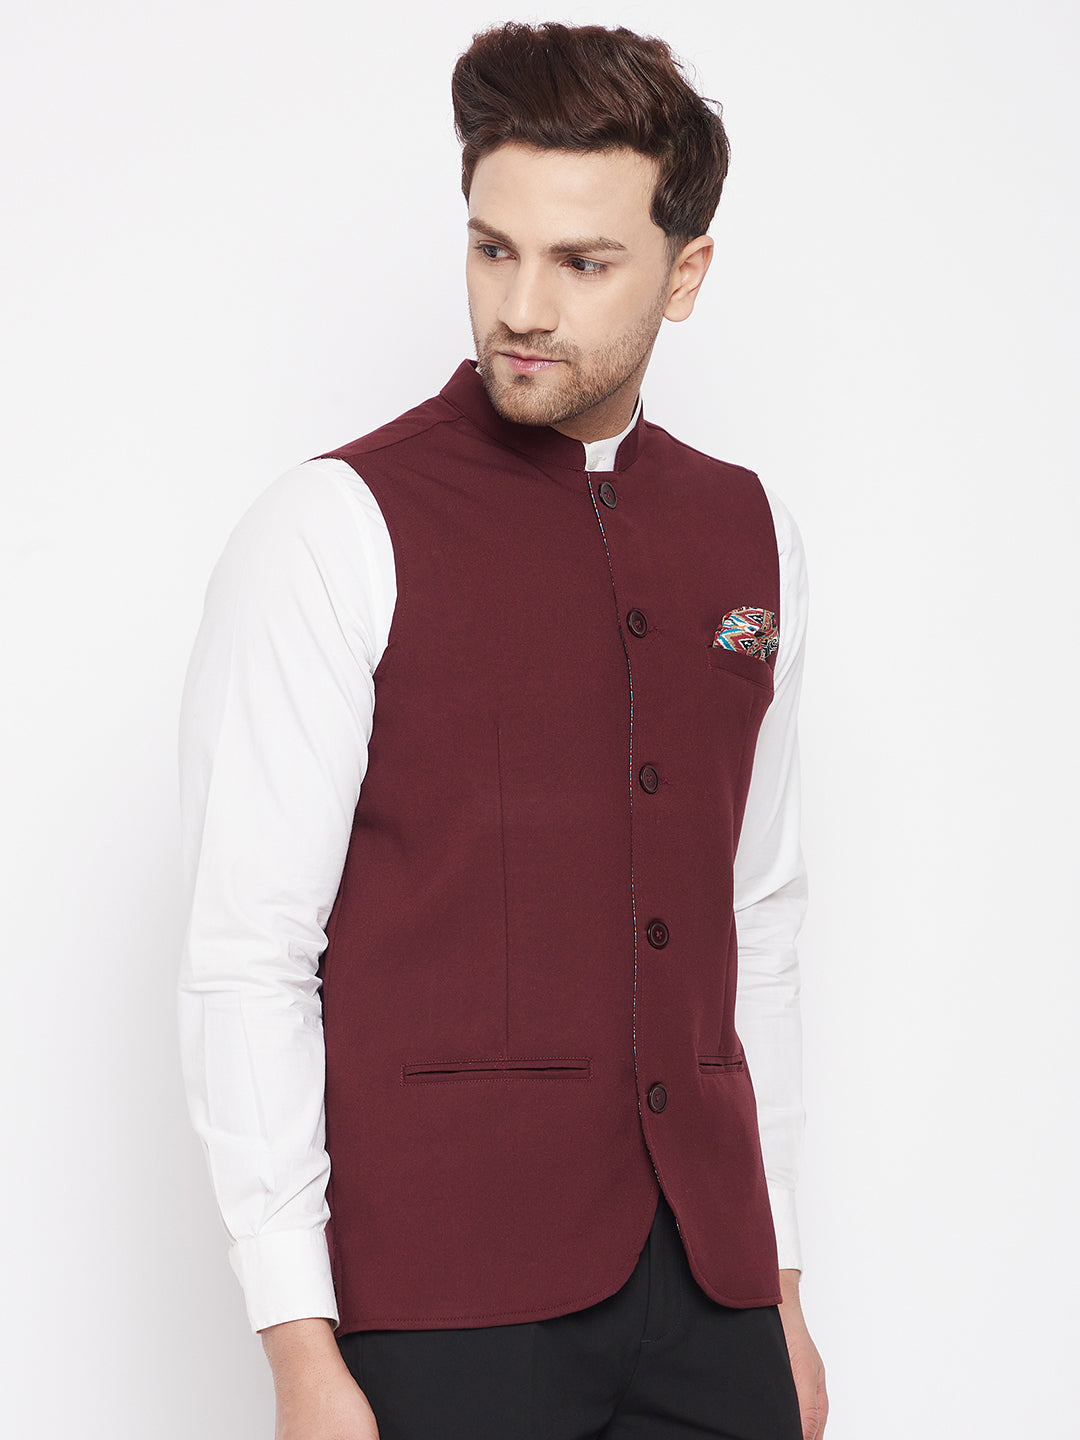 Men's Maroon Color Nehru Jacket-Contrast Lining-Inbuilt Pocket Square - Even Apparels